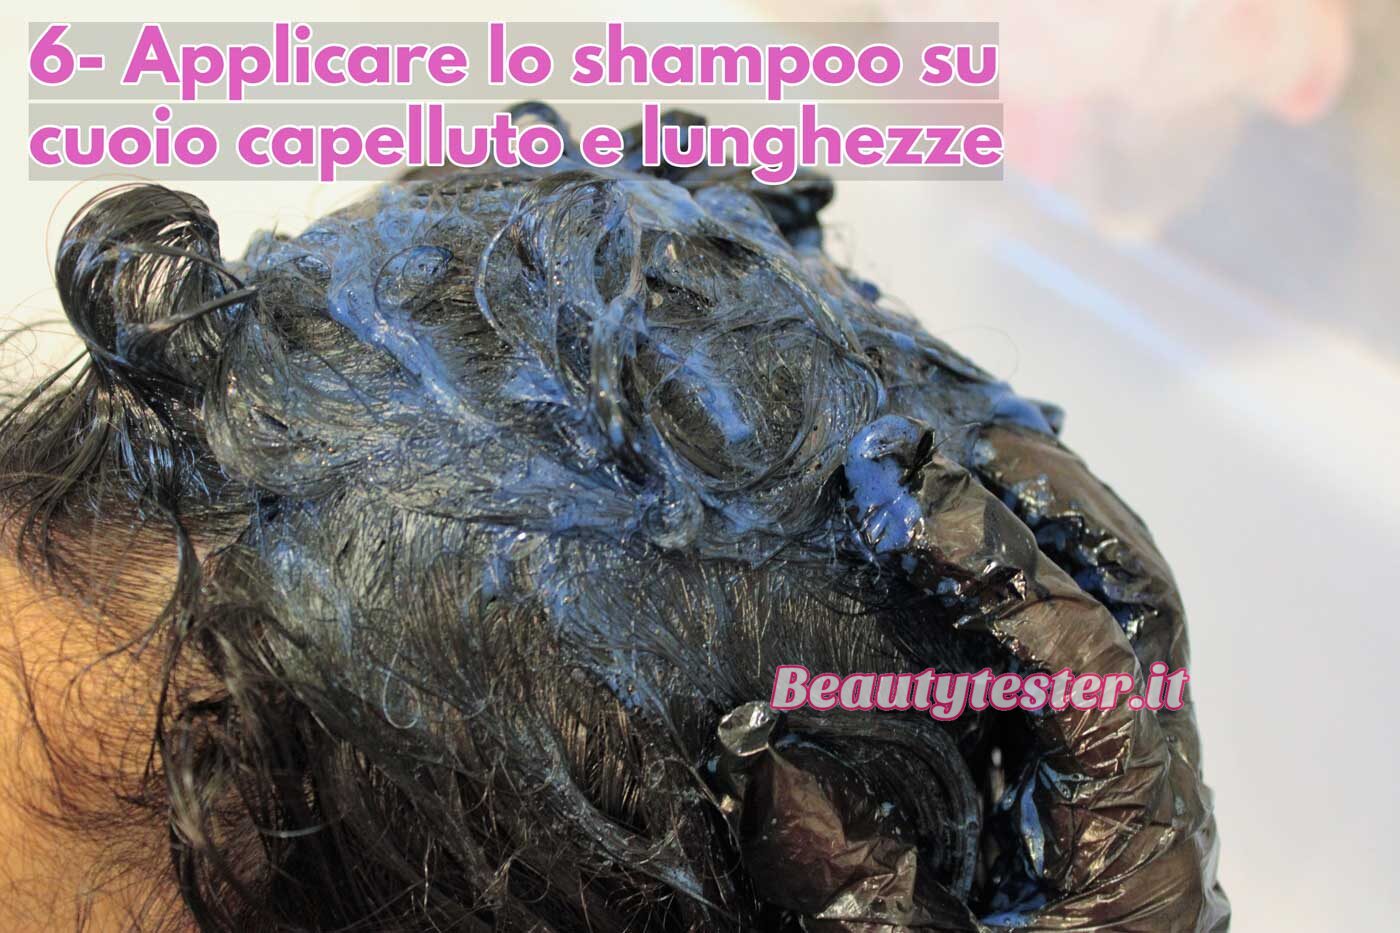 Applica una generosa quantità di shampoo sui capelli bagnati, distribuendolo in maniera uniforme su cuoio capelluto e lunghezze